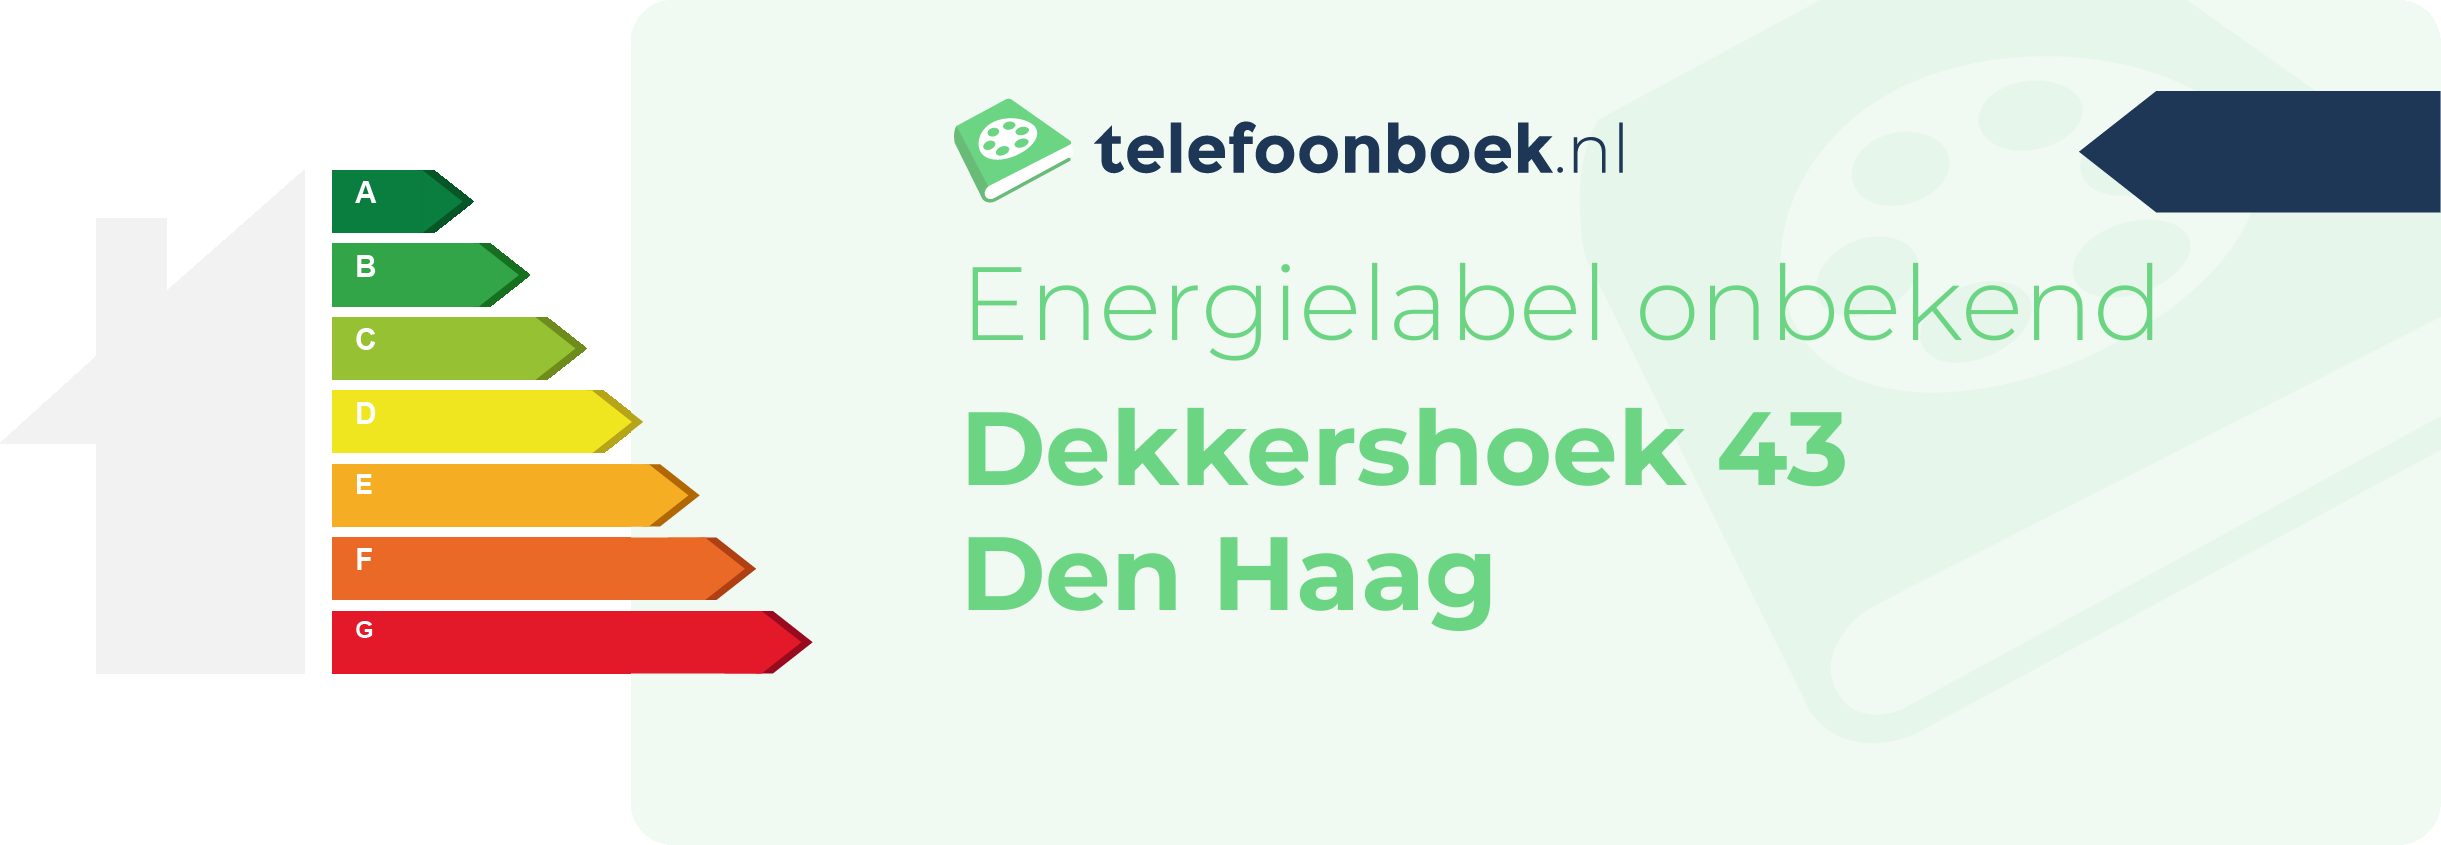 Energielabel Dekkershoek 43 Den Haag